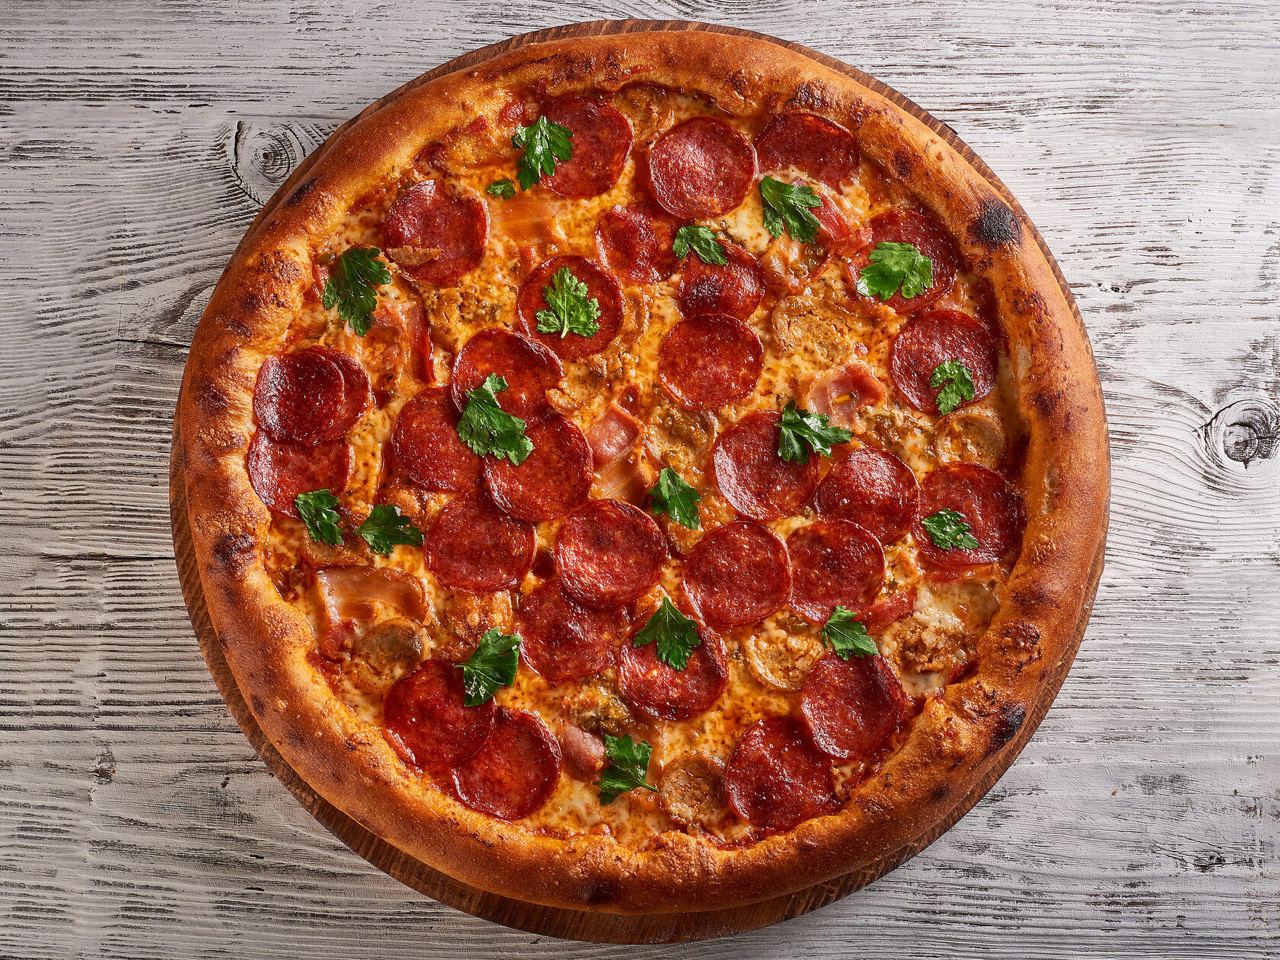 сколько стоит целая пицца пепперони фото 114